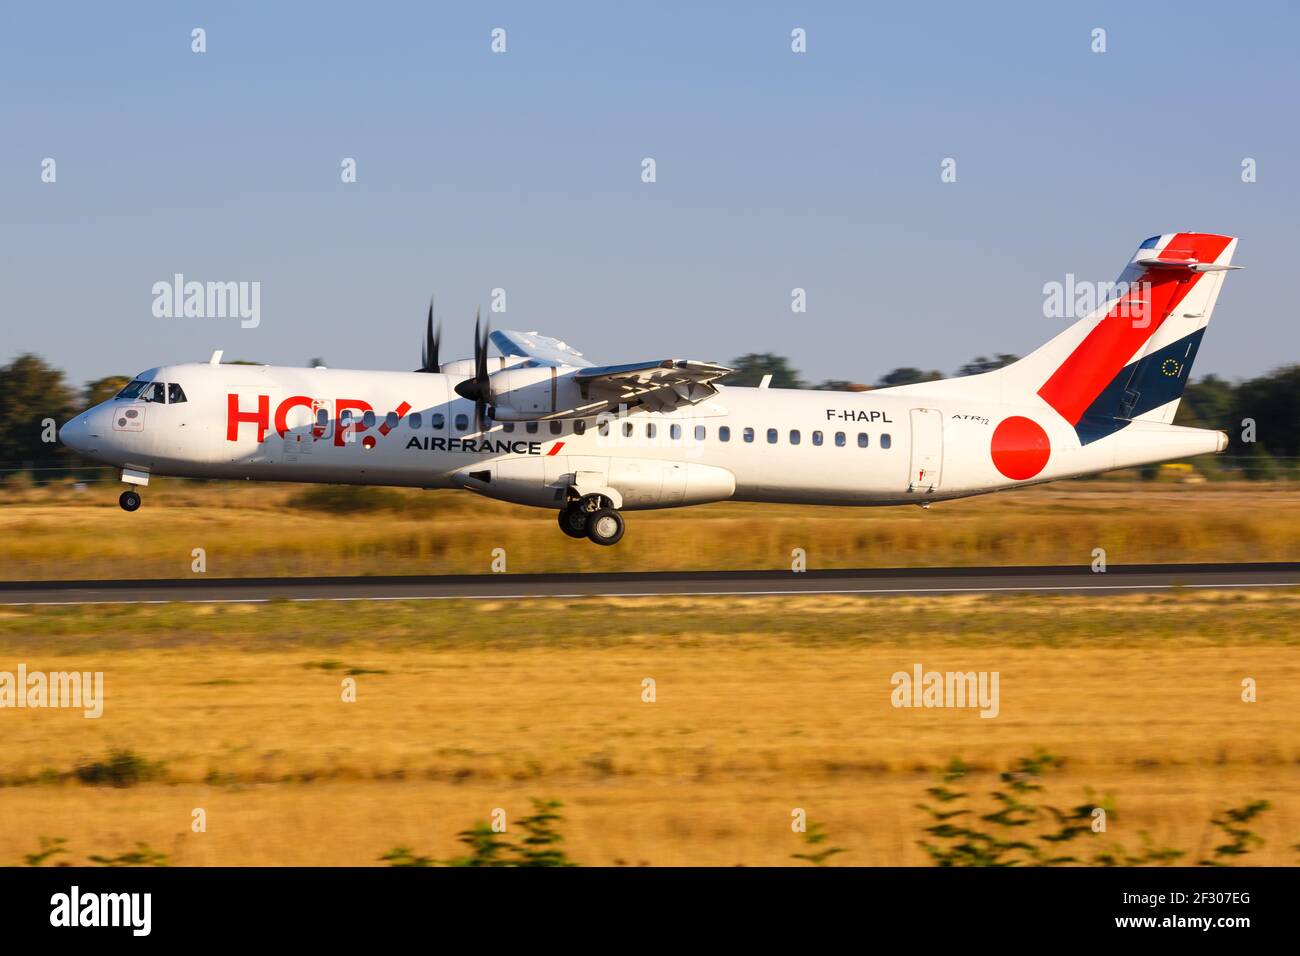 Paris, France - 15 août 2018 : avion HOP ATR 72 à l'aéroport de Paris Orly (ORY) en France. Banque D'Images